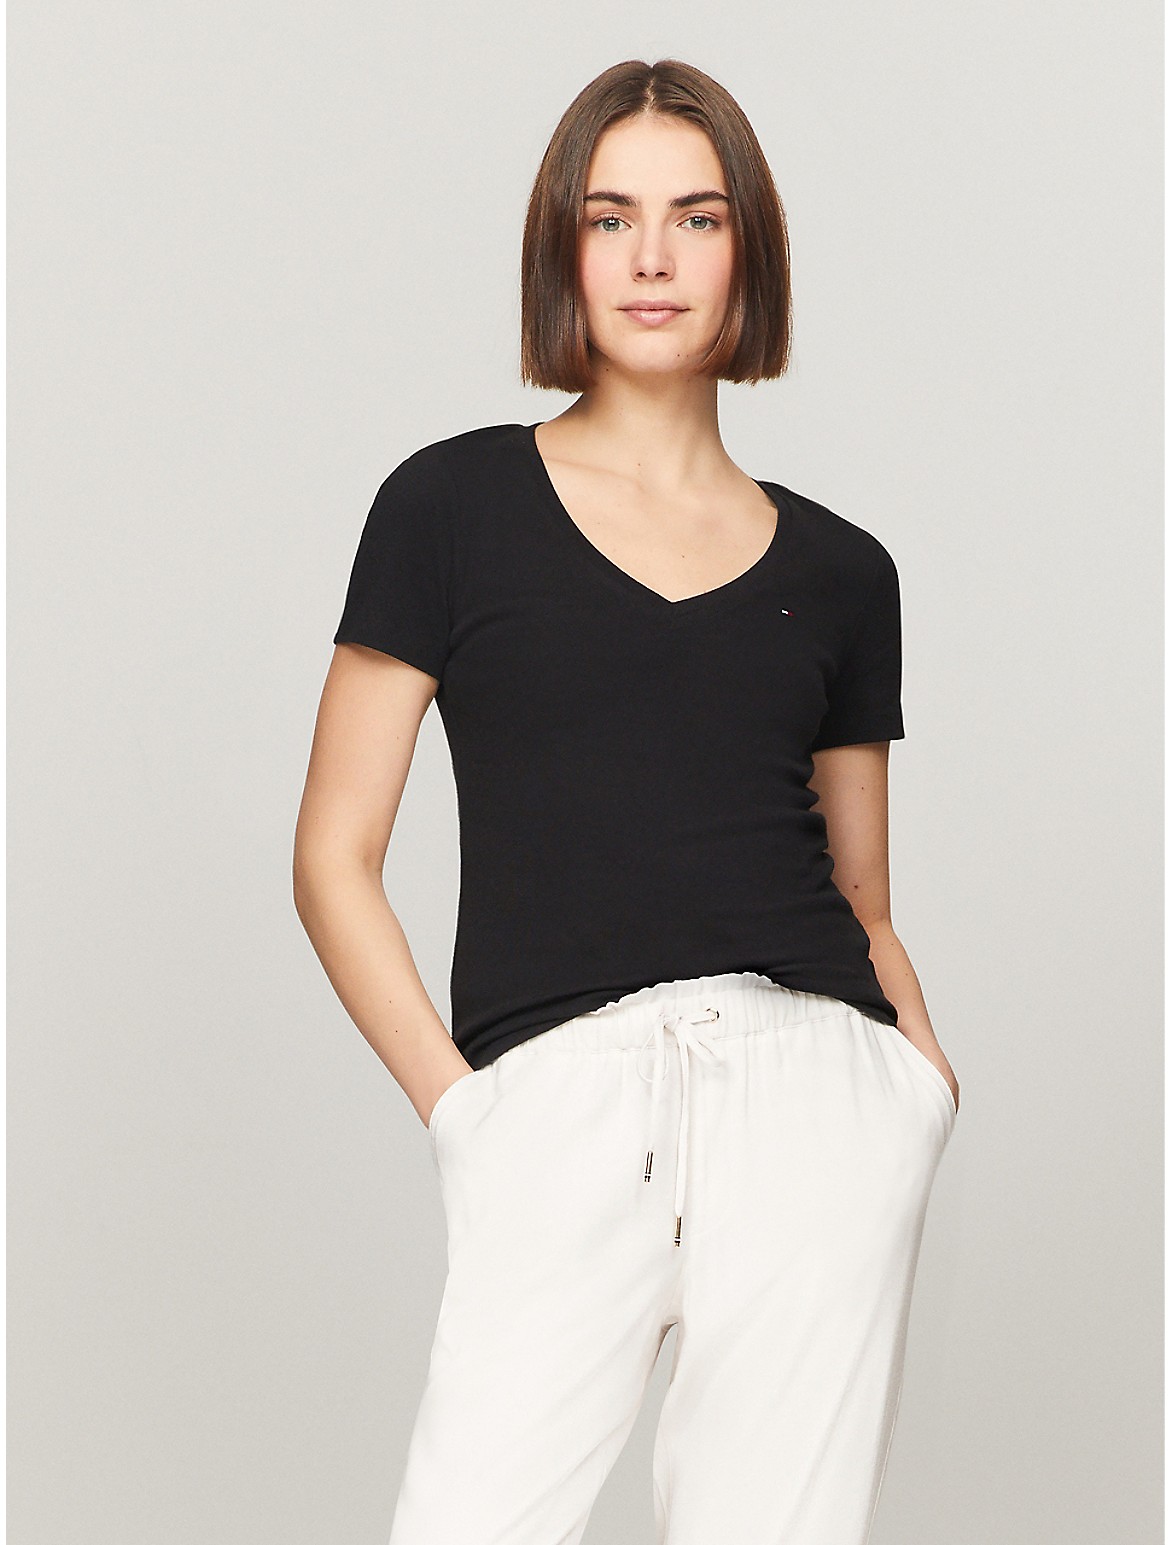 Tommy Hilfiger Women's V-Neck Favorite T-Shirt - Black - L